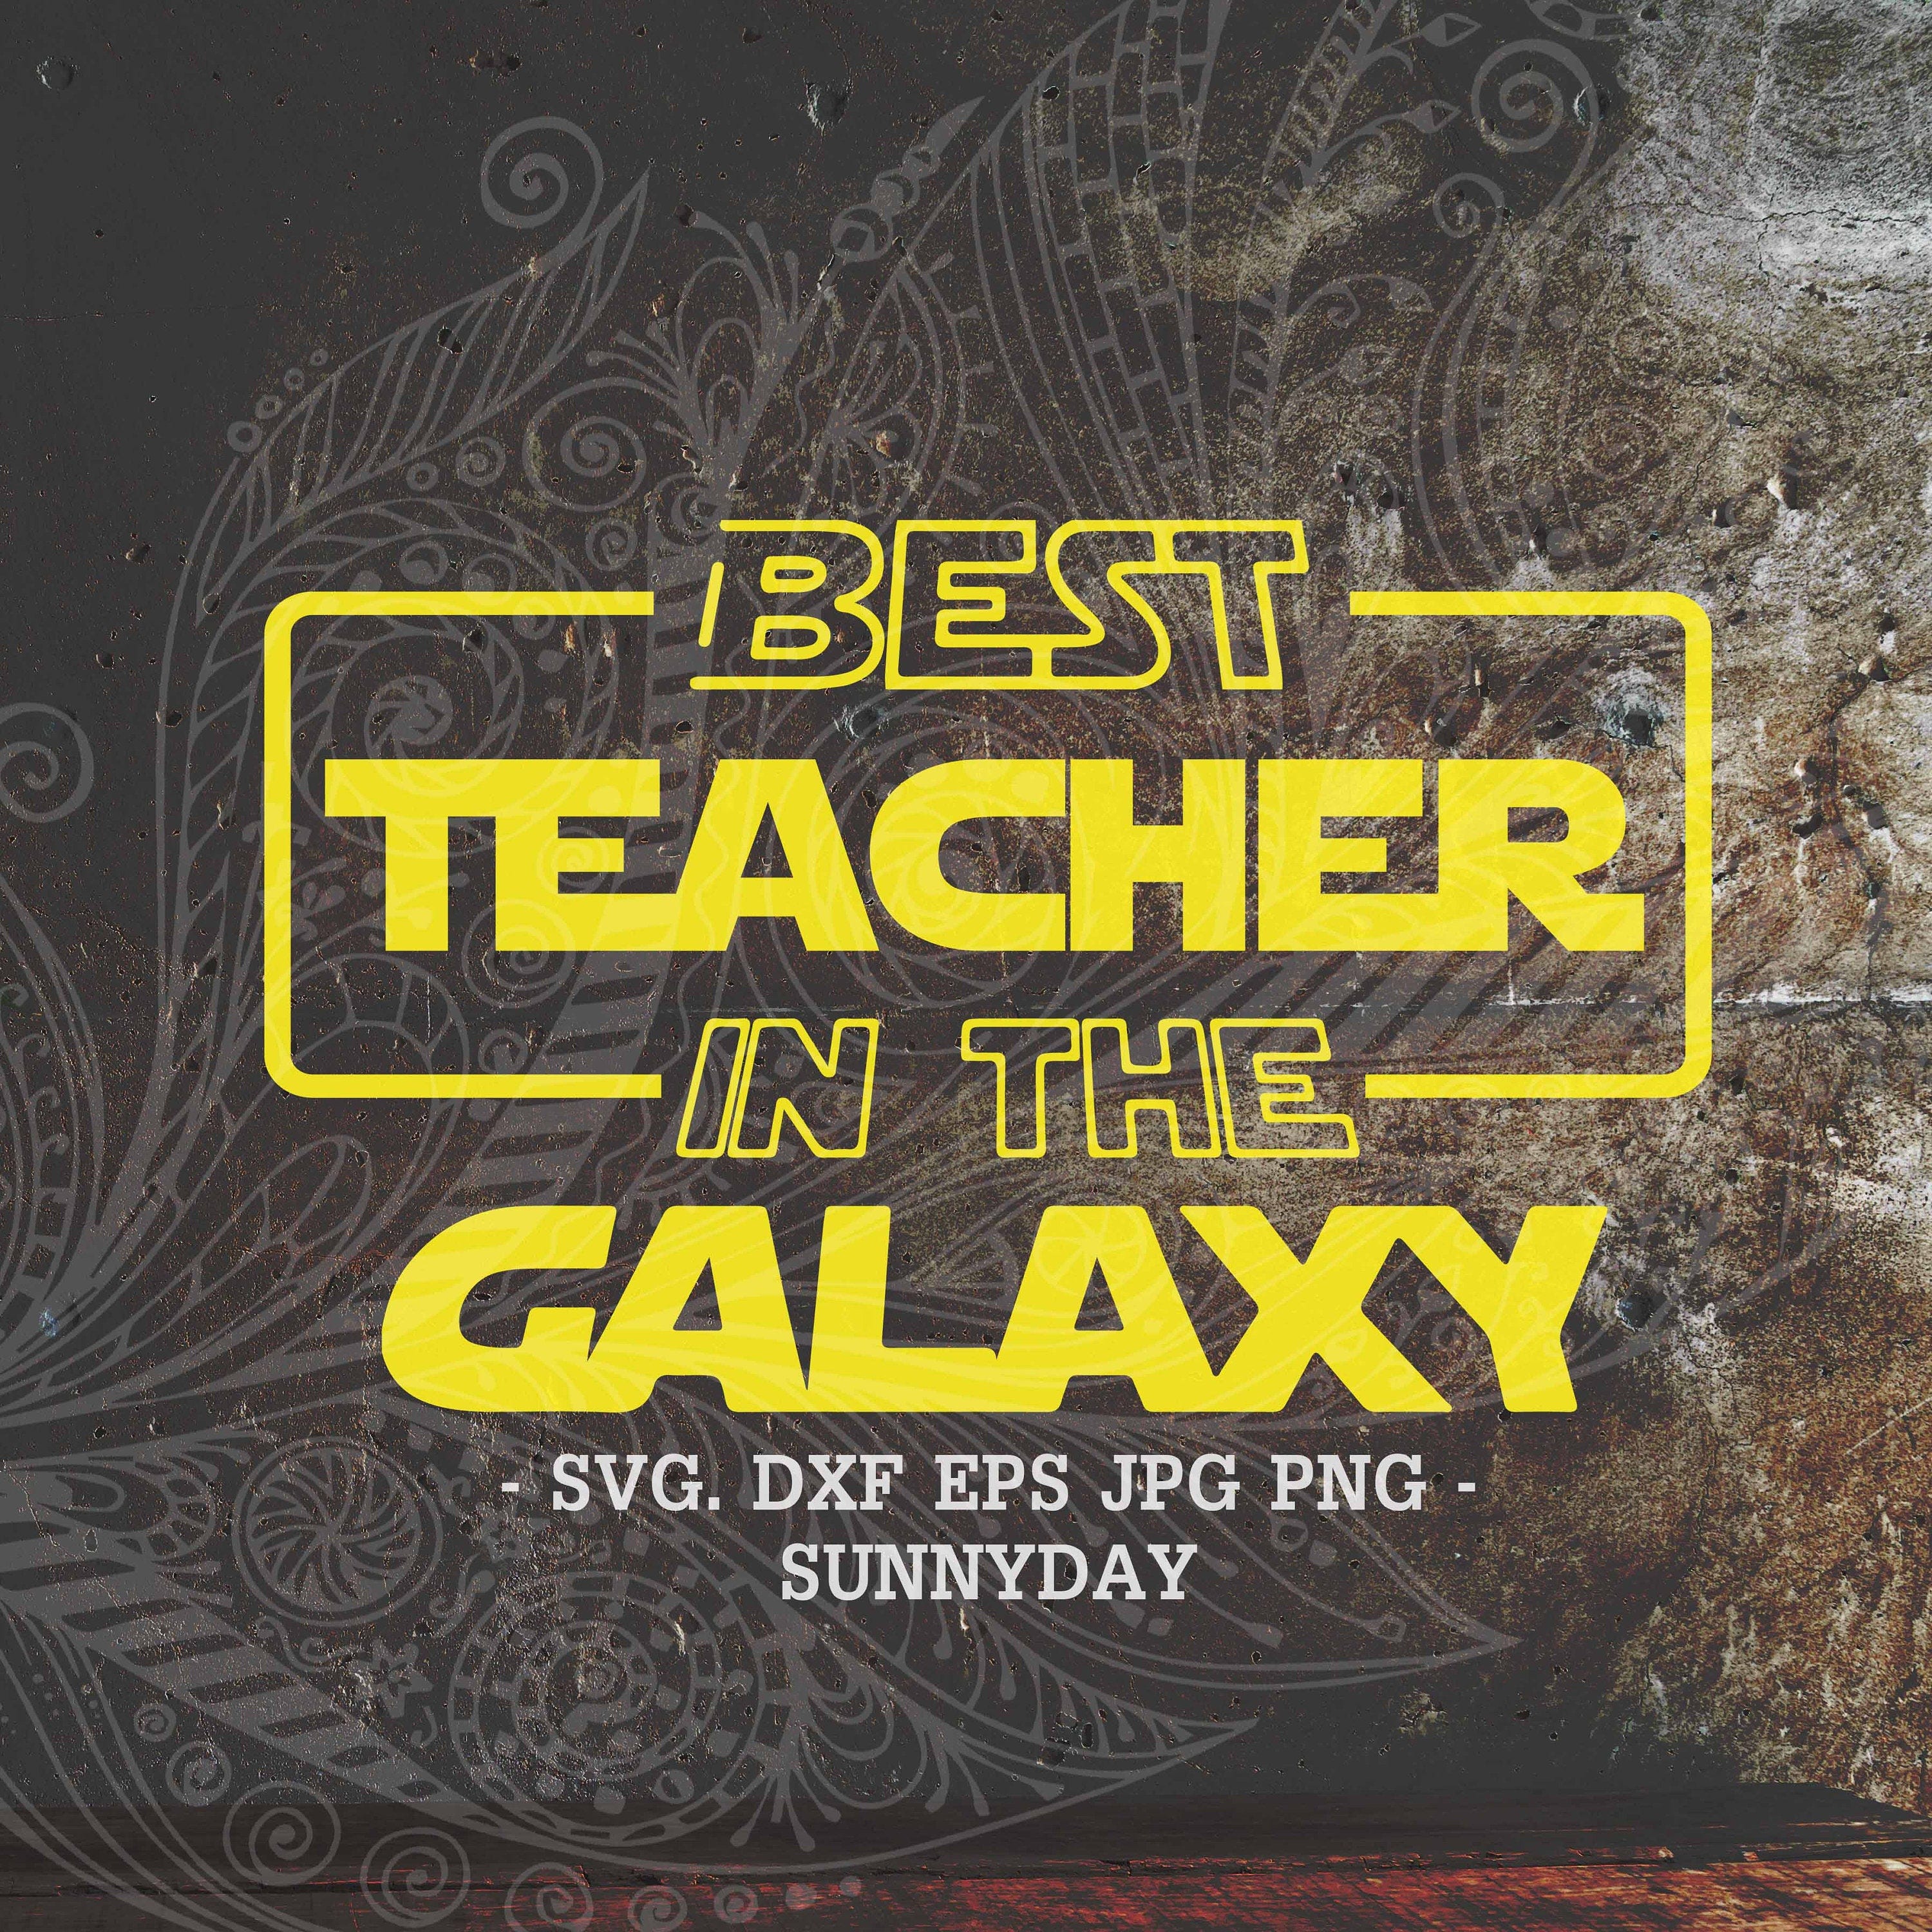 Best Teacher in the galaxy Svg,Best Teacher Ever svg,Teacher,DXF Silhouette,Print,Vinyl,Cricut Cutting,T shirt Design,Teacher Appreciation